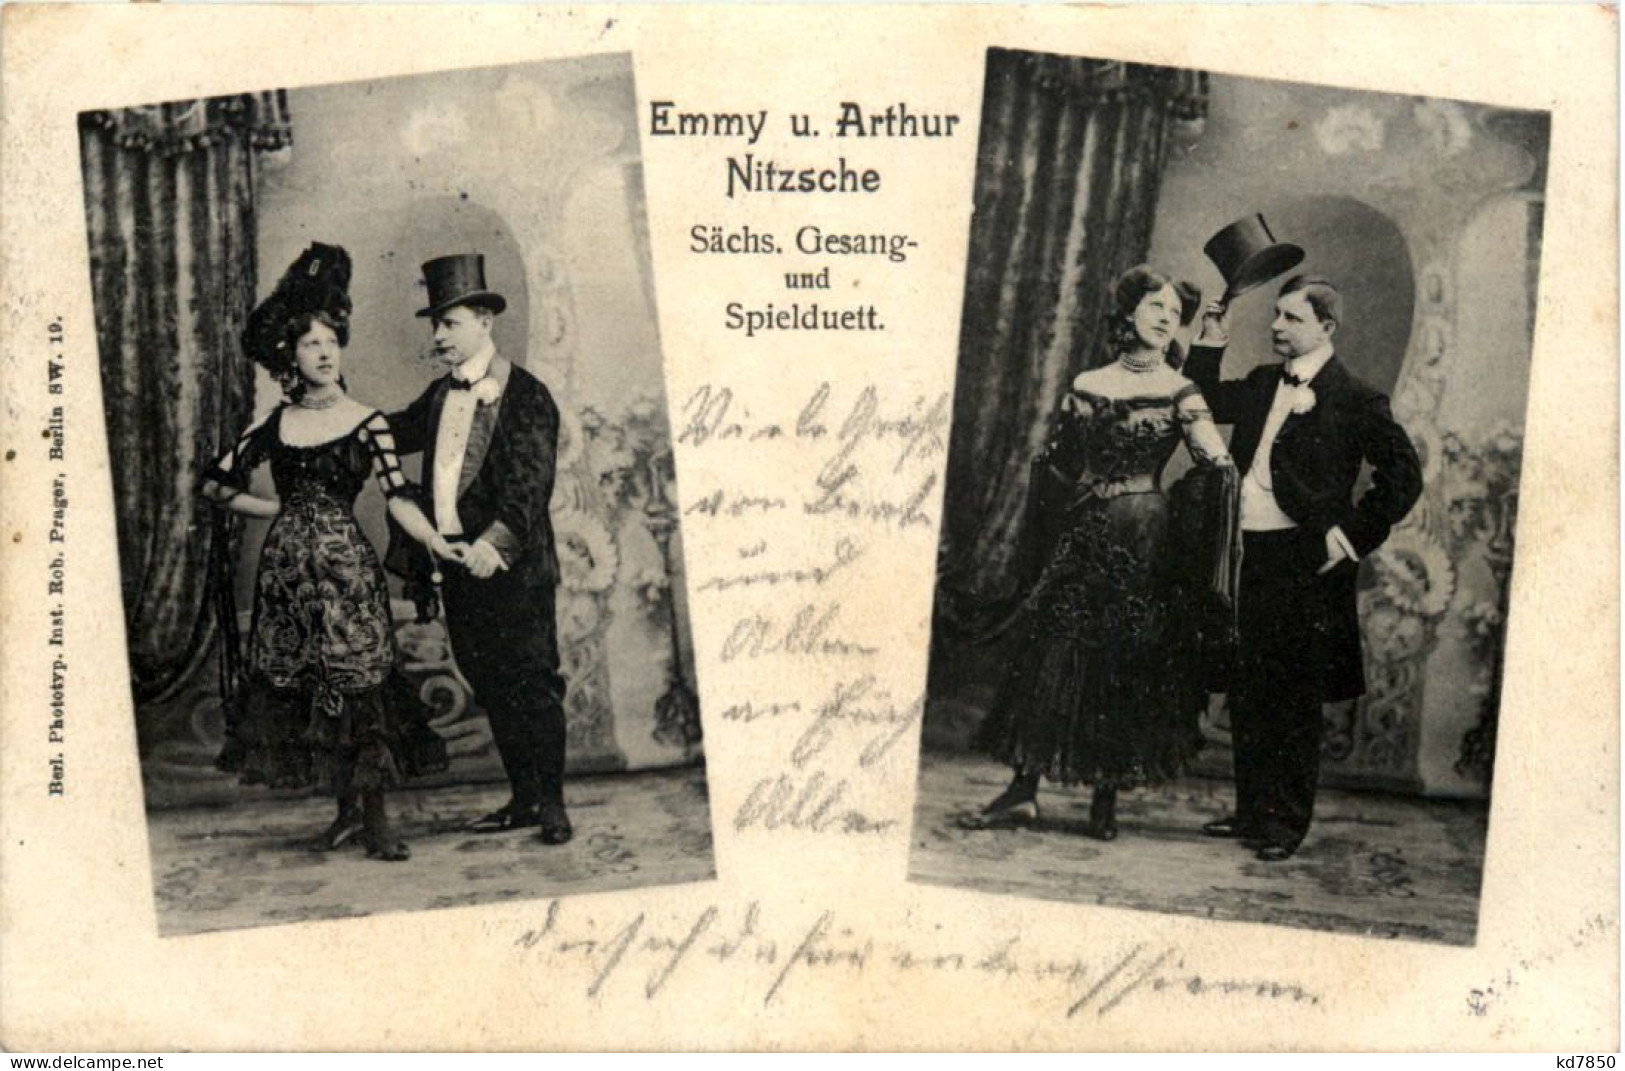 Emmy Und Arthur Nitzsche Gesang Und Spielduett - Zirkus